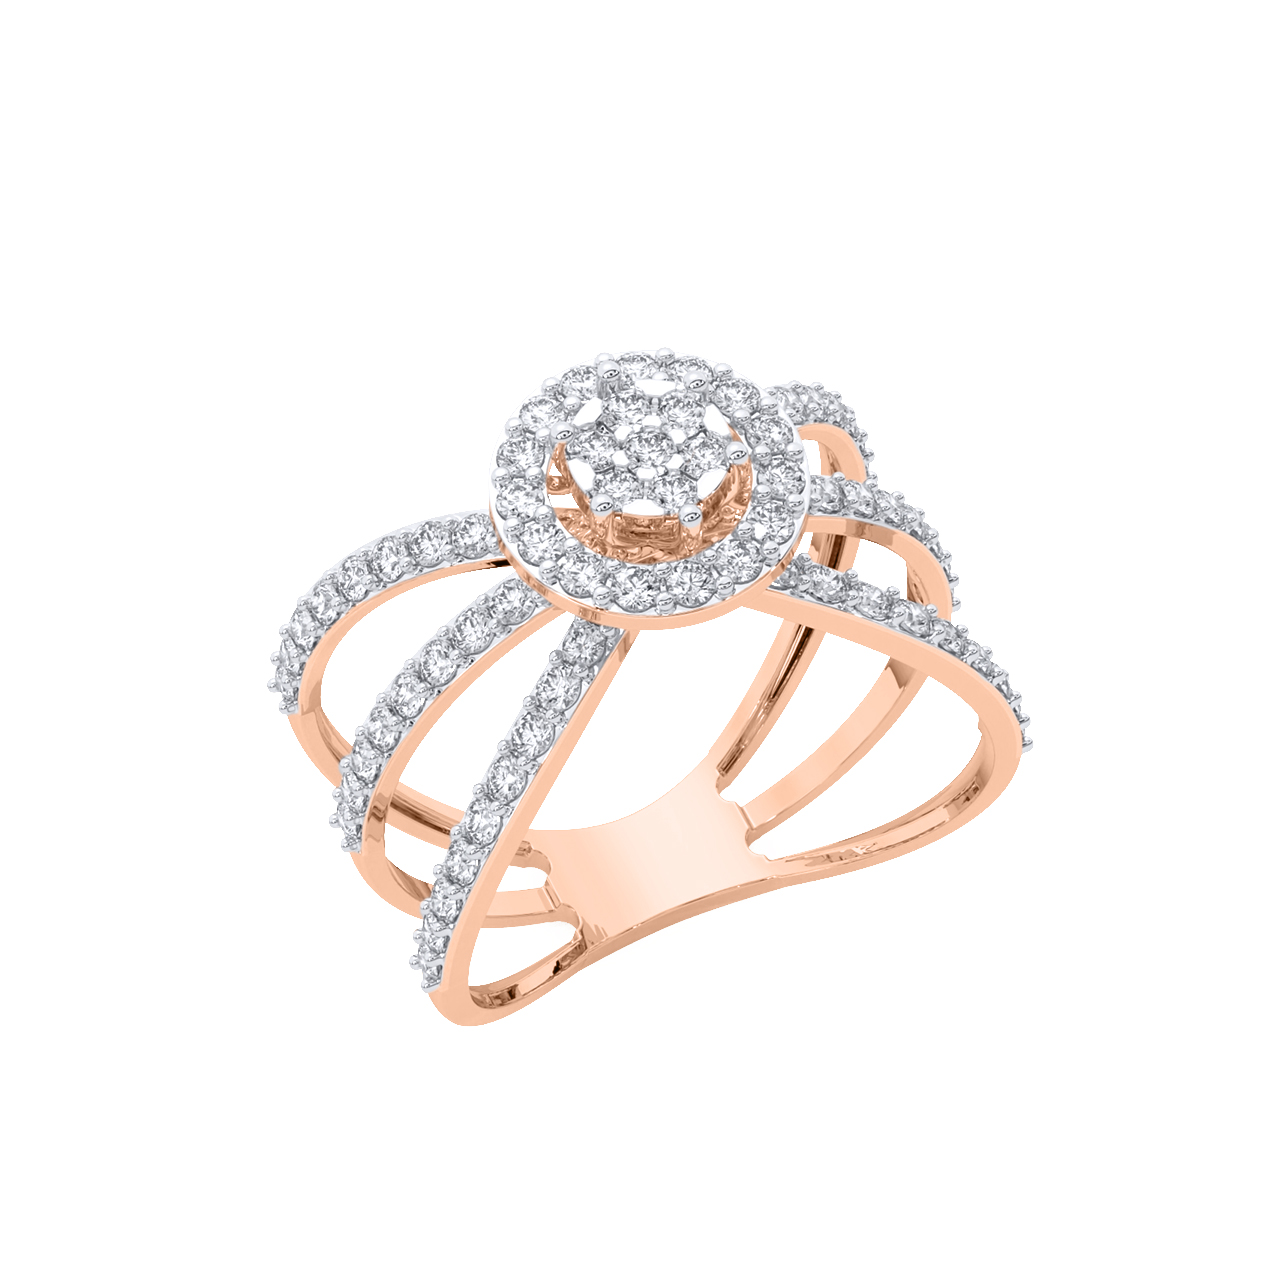 Lauren Diamond Engagement Ring